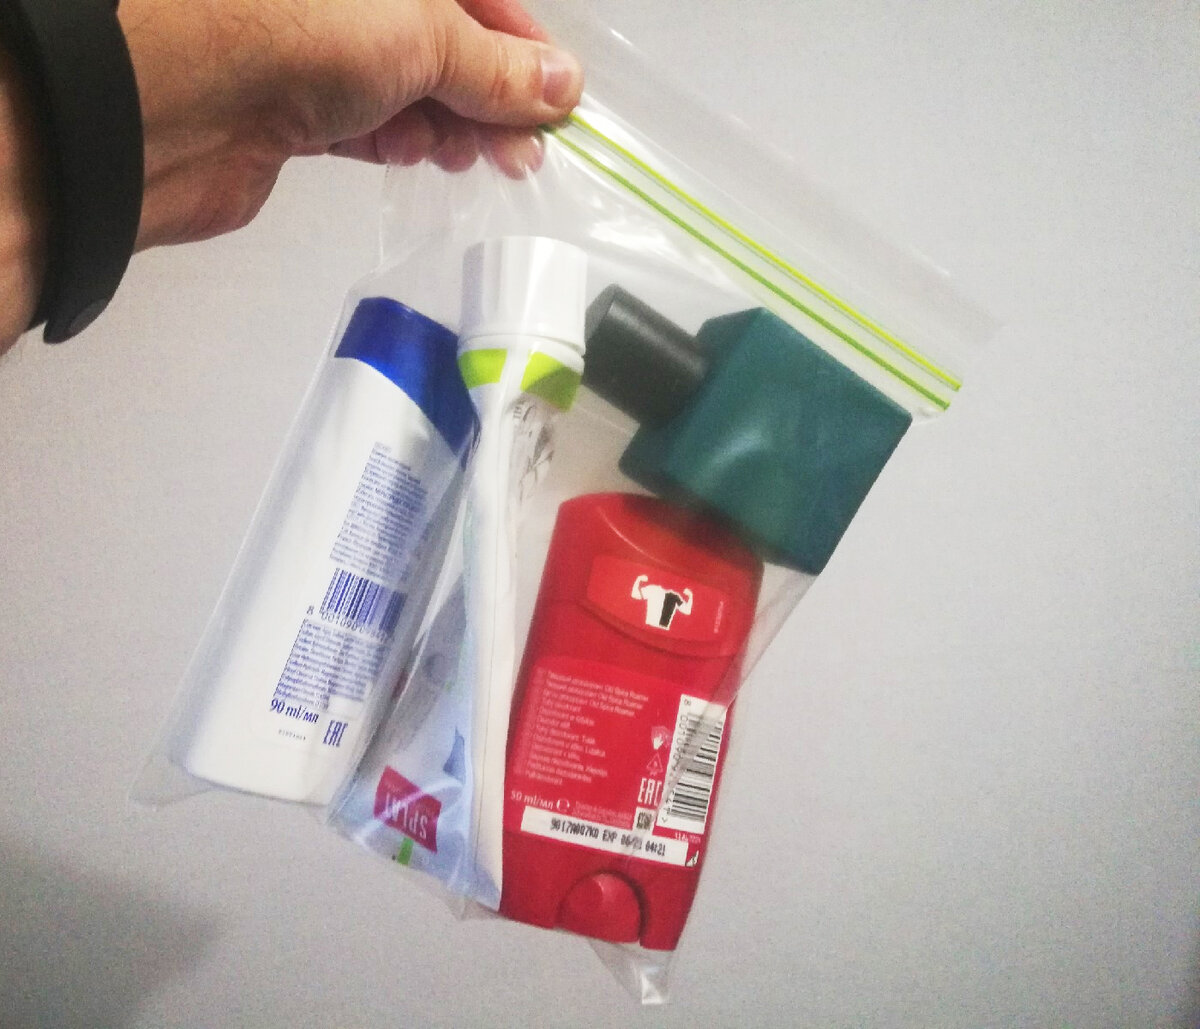 Что можно провести в ручной. Пакет для жидкостей в ручной клади. Пластиковый пакет для перевозки жидкостей в самолете. ЗИП пакет для жидкостей в ручной клади. Прозрачные пакетики для ручной клади.